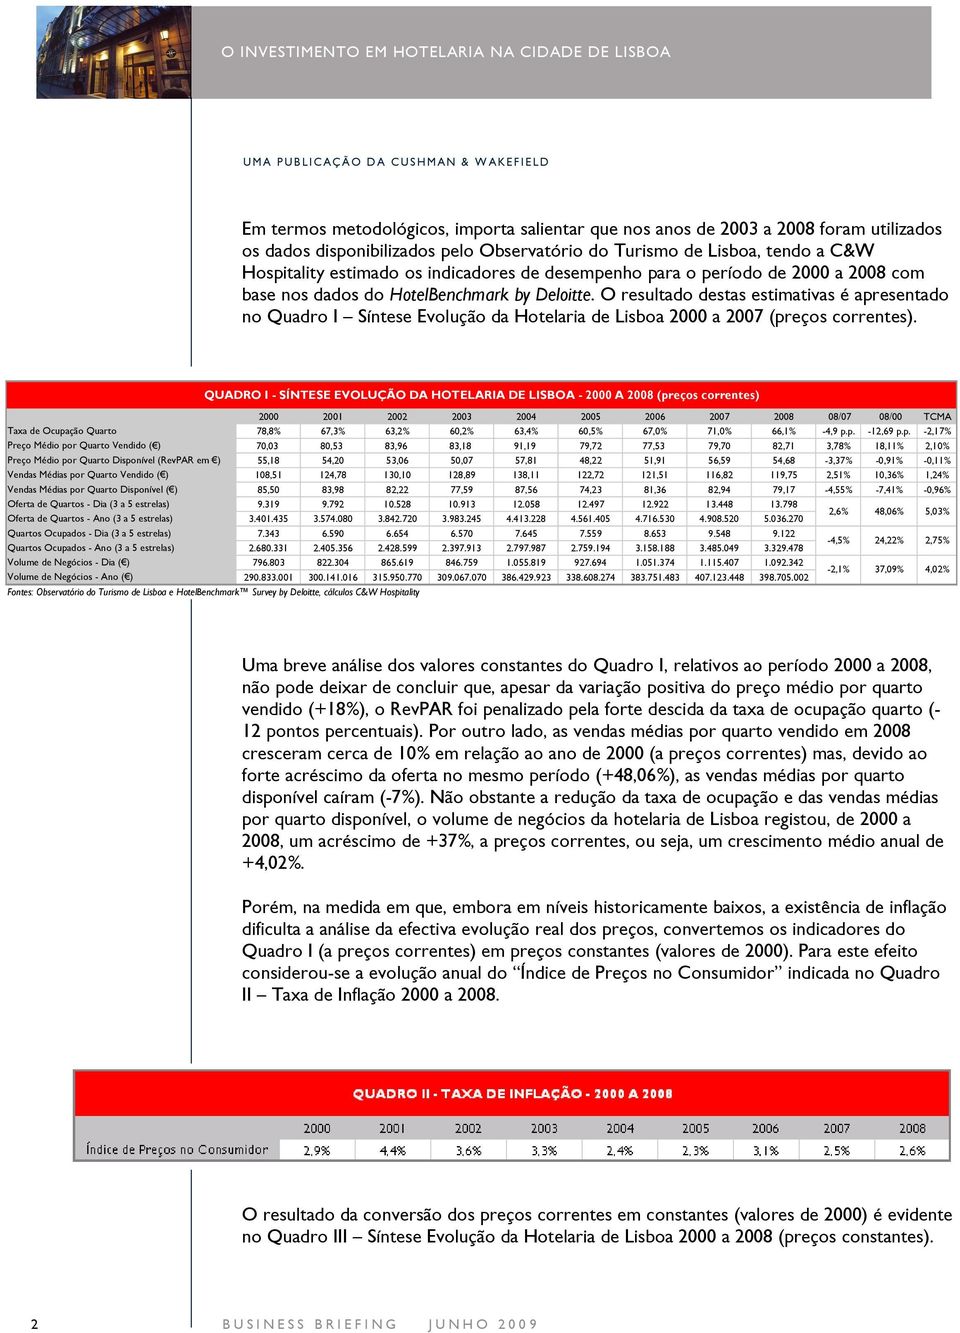 O resultado destas estimativas é apresentado no Quadro I Síntese Evolução da Hotelaria de Lisboa 2000 a 2007 (preços correntes).